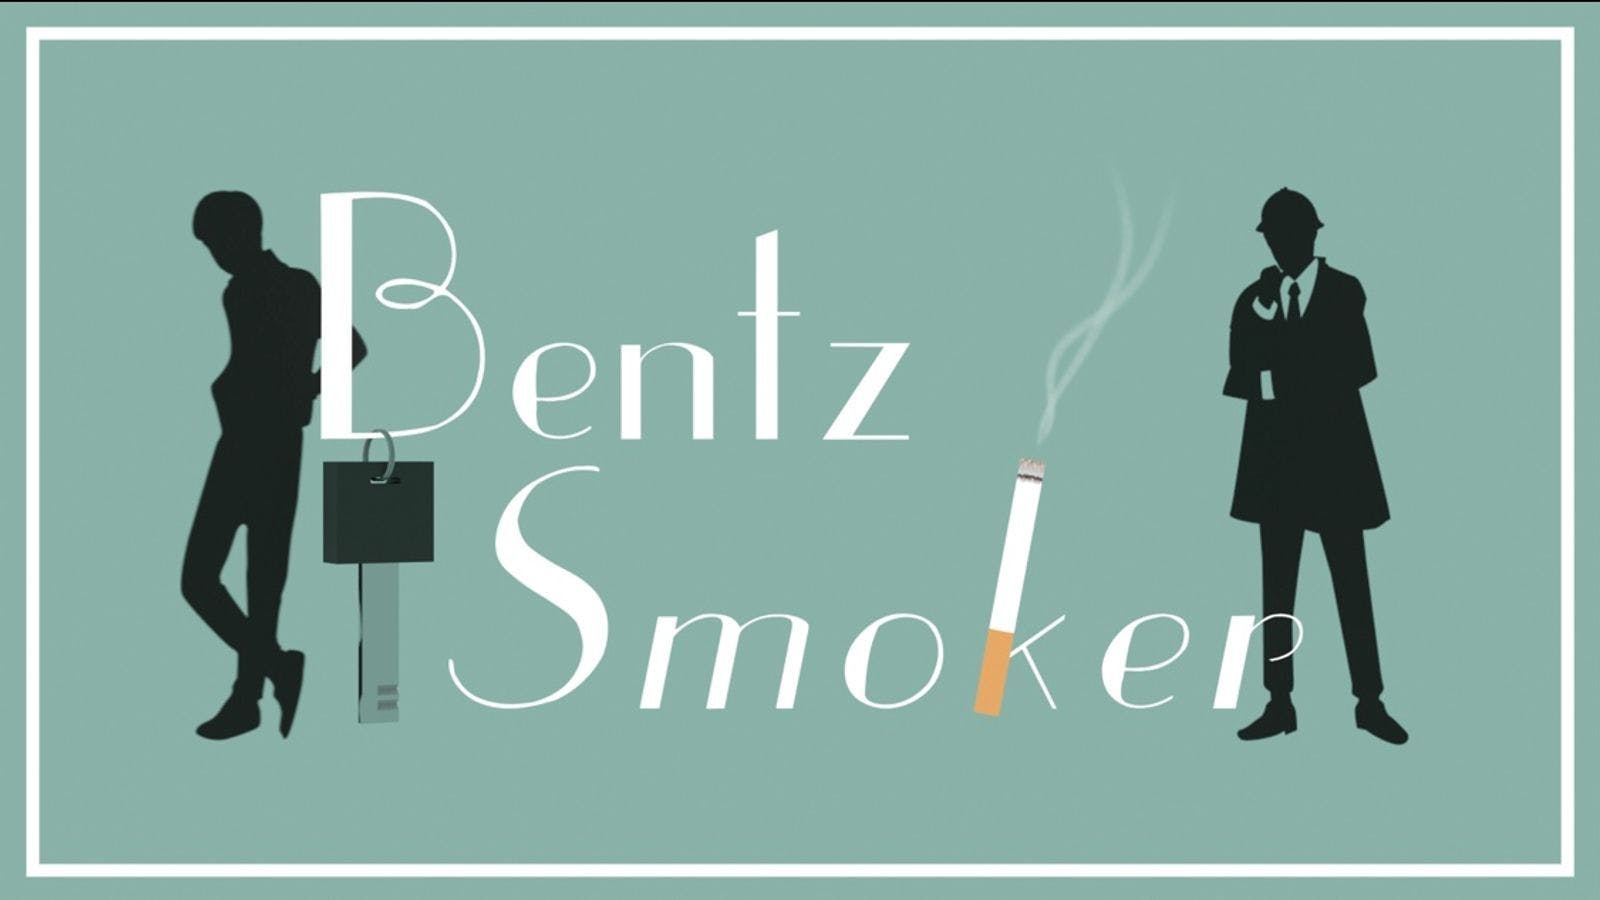 Bentz Smoker